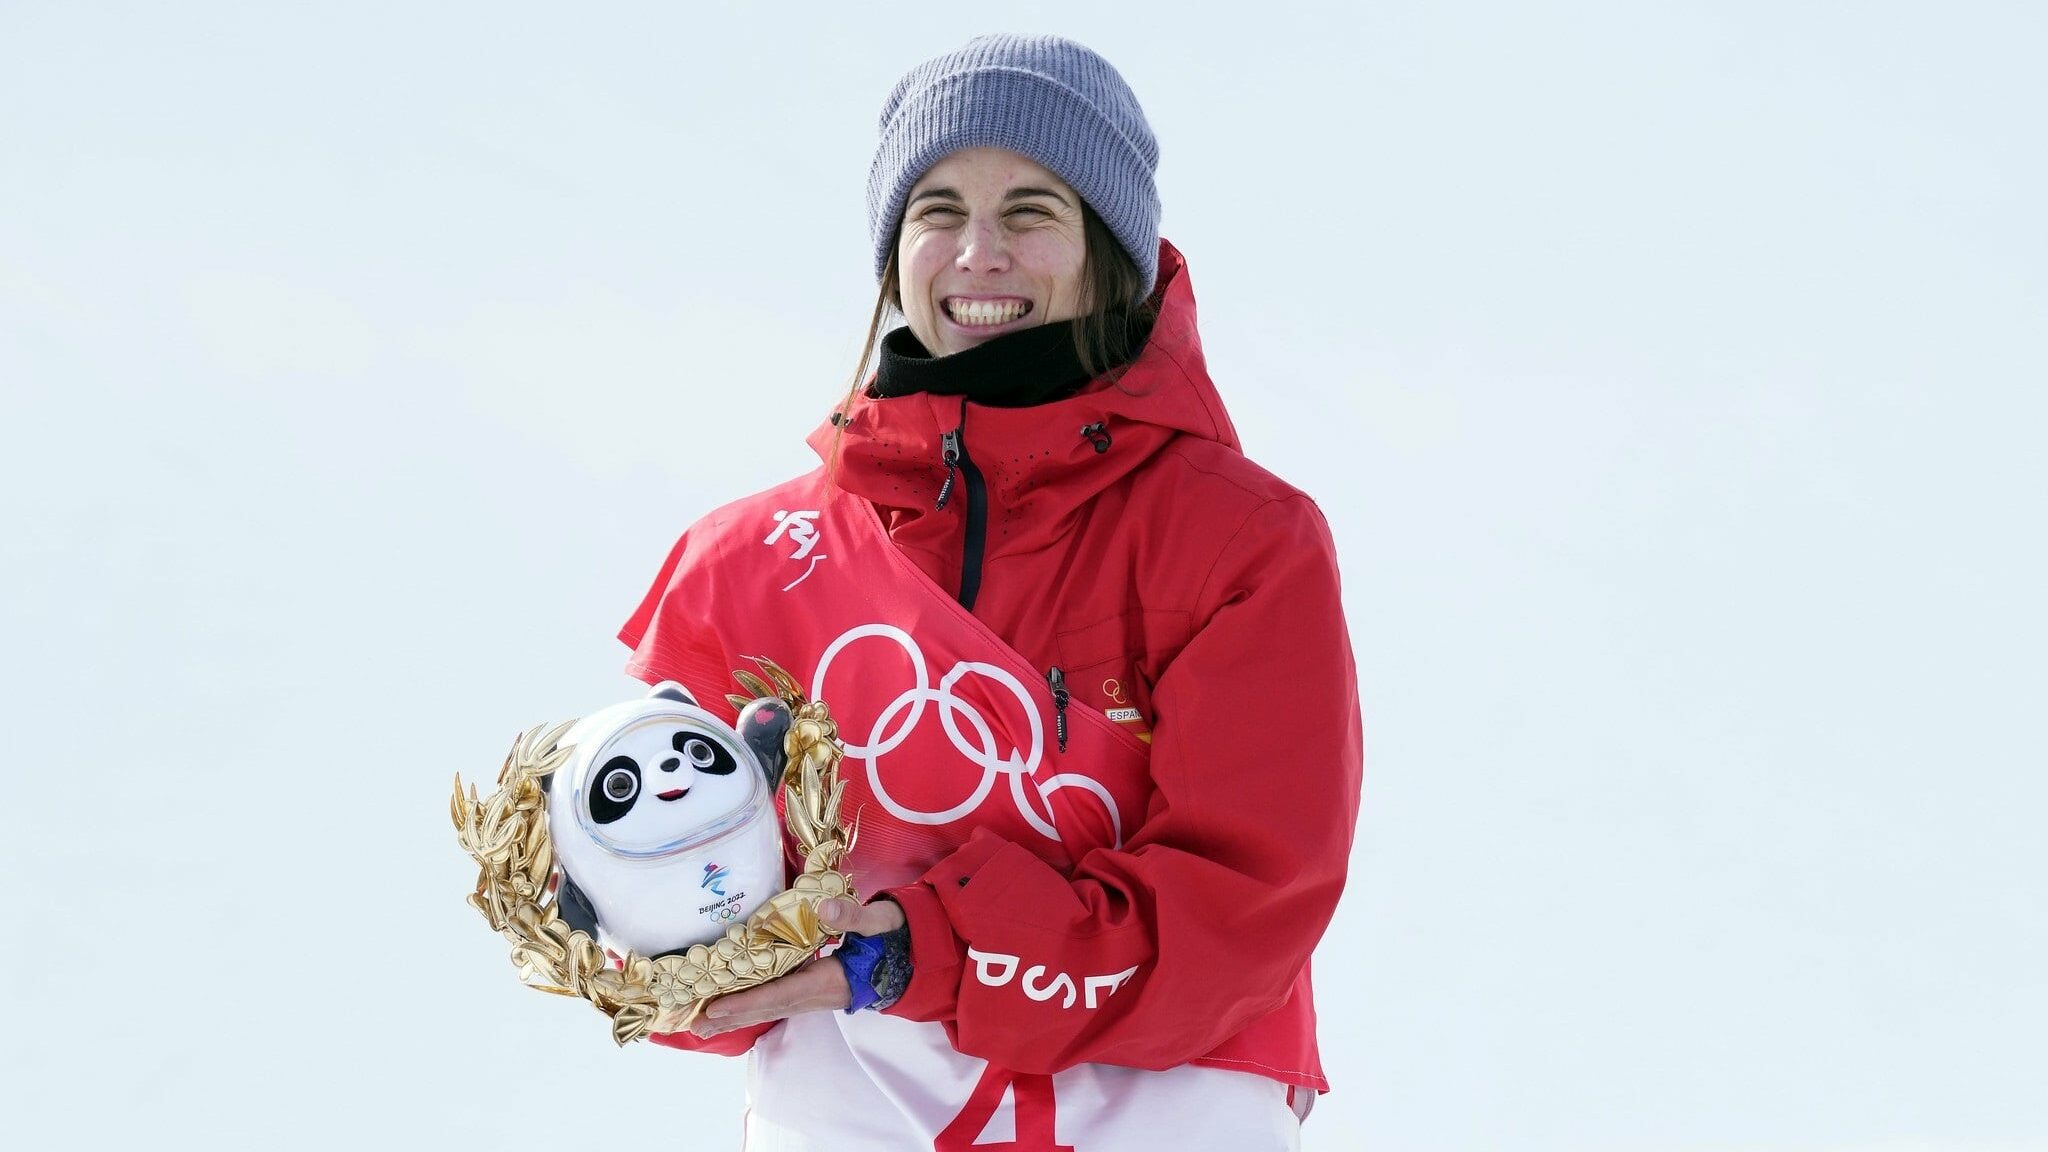 La española Queralt Castellet conquista la medalla de plata en los Juegos Olímpicos de Invierno